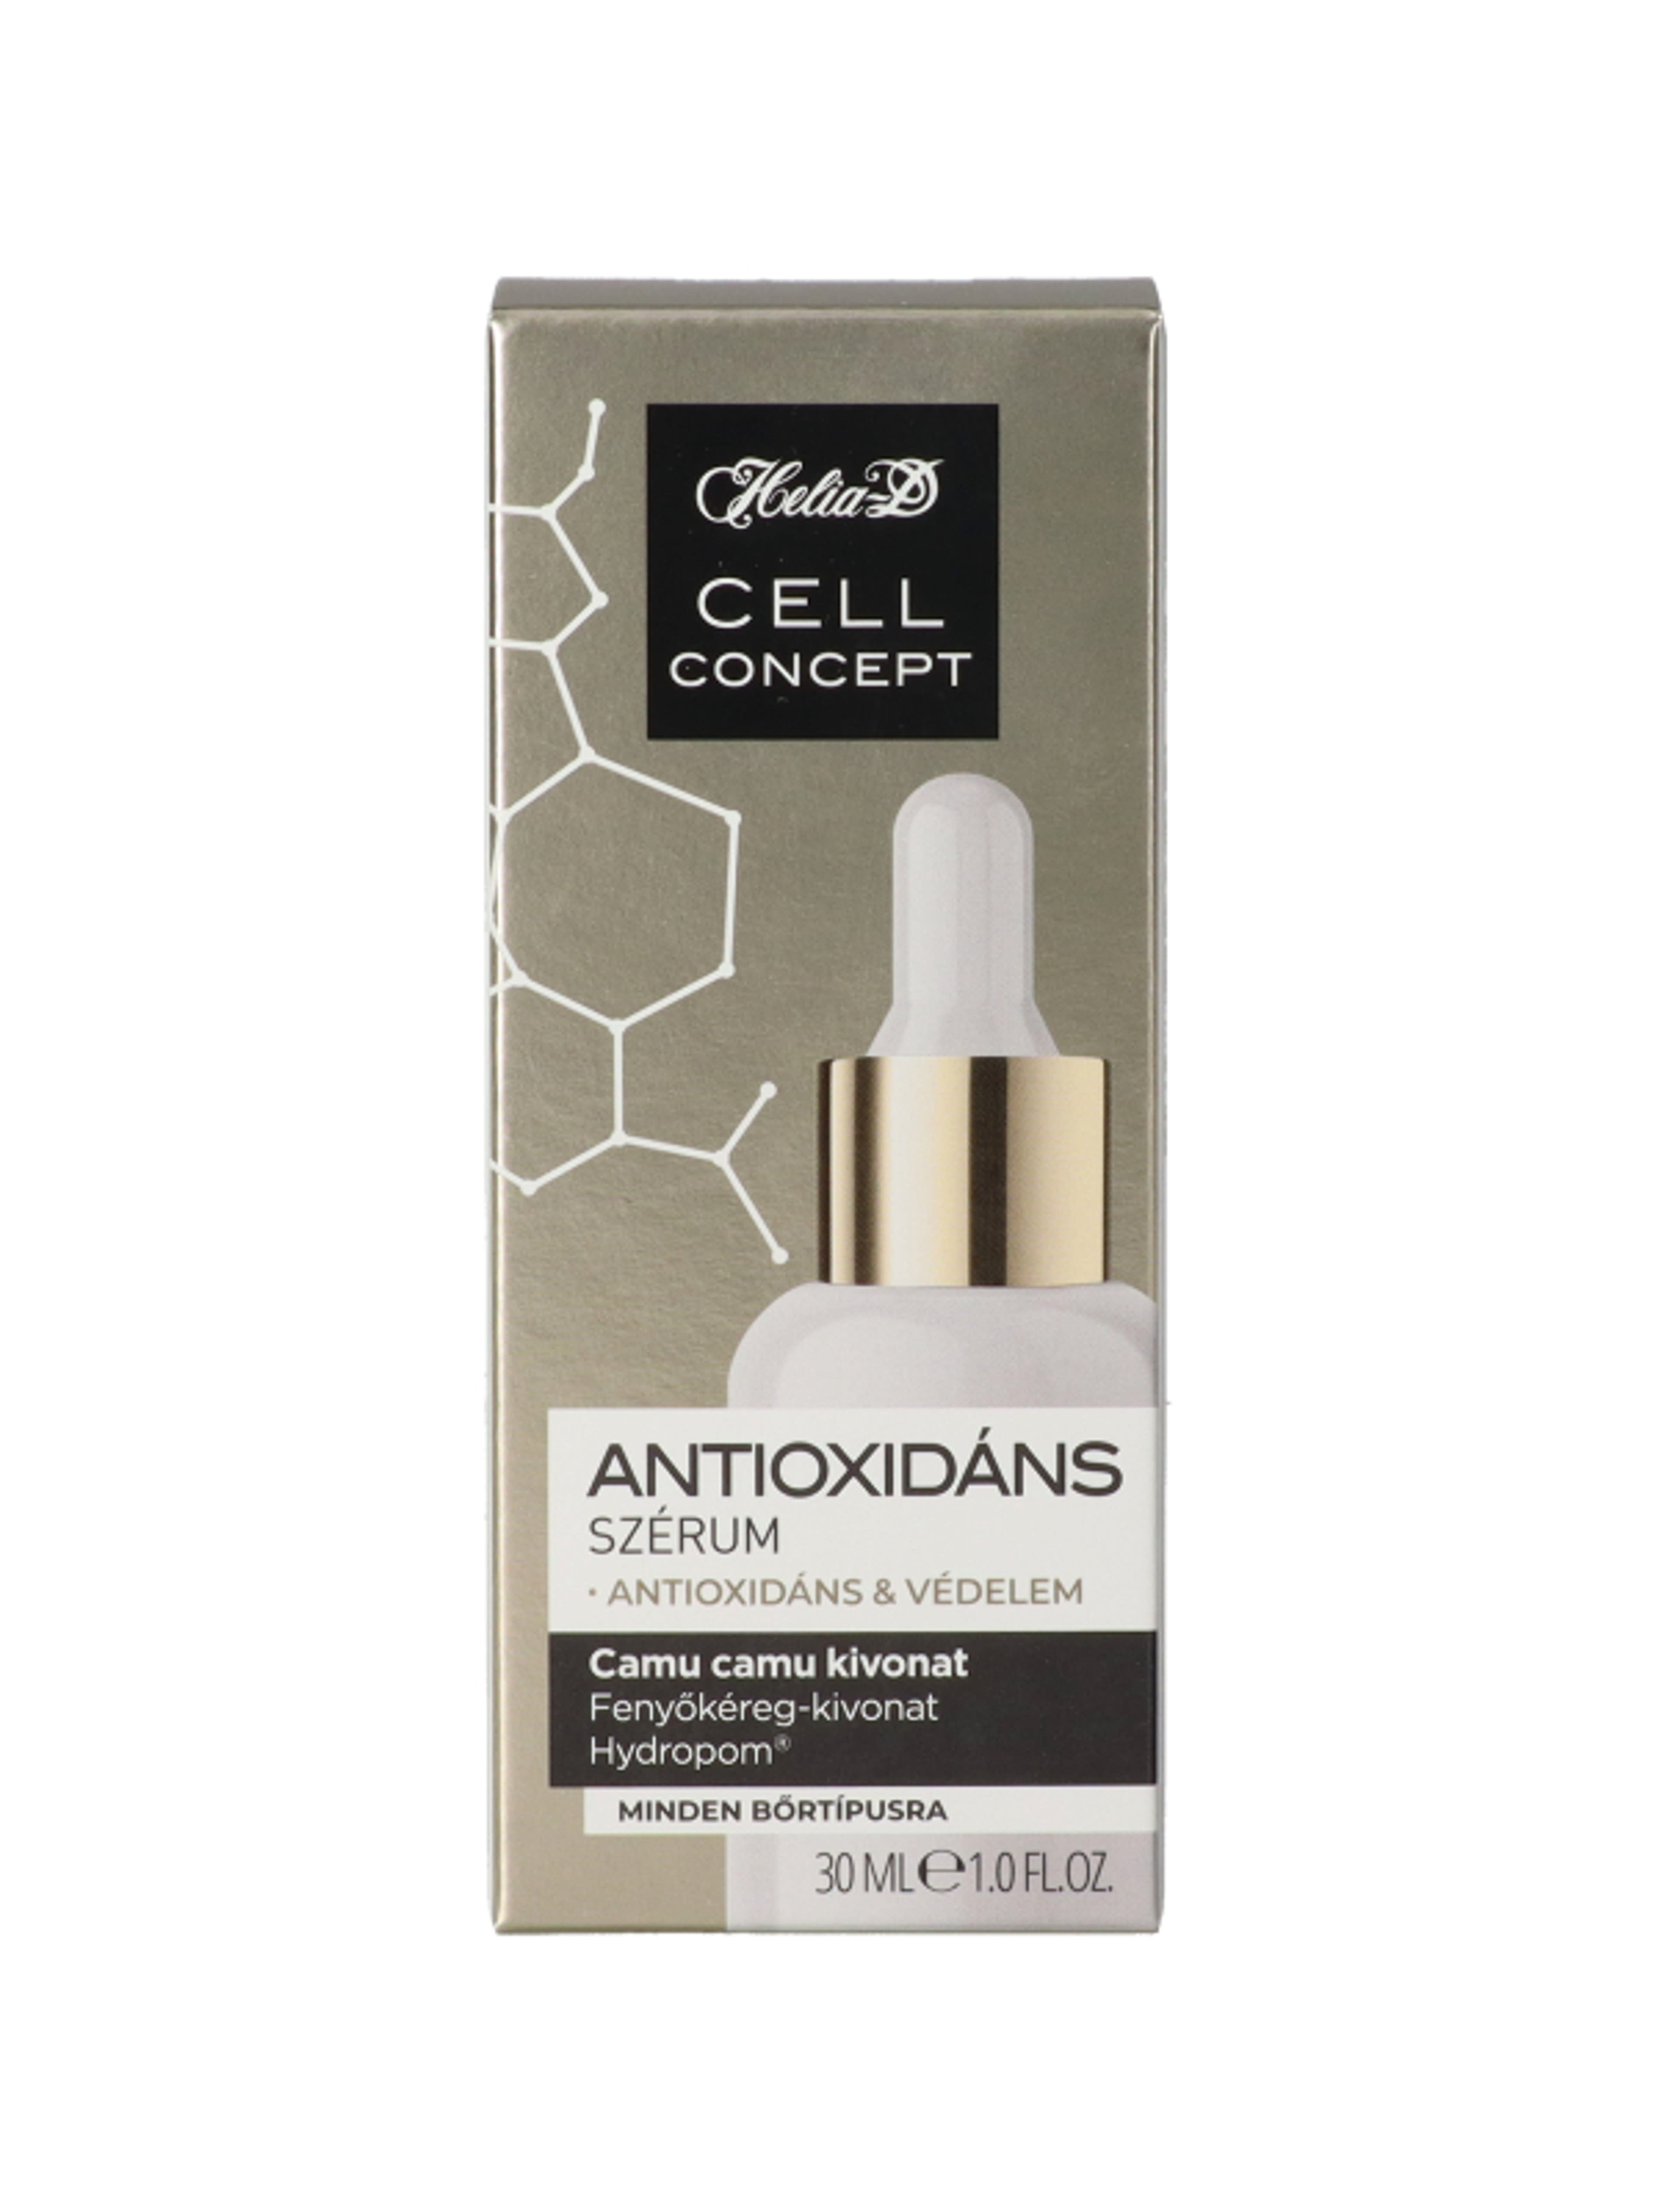 Helia-D Cell Concept Antioxidáns szérum - 30 ml